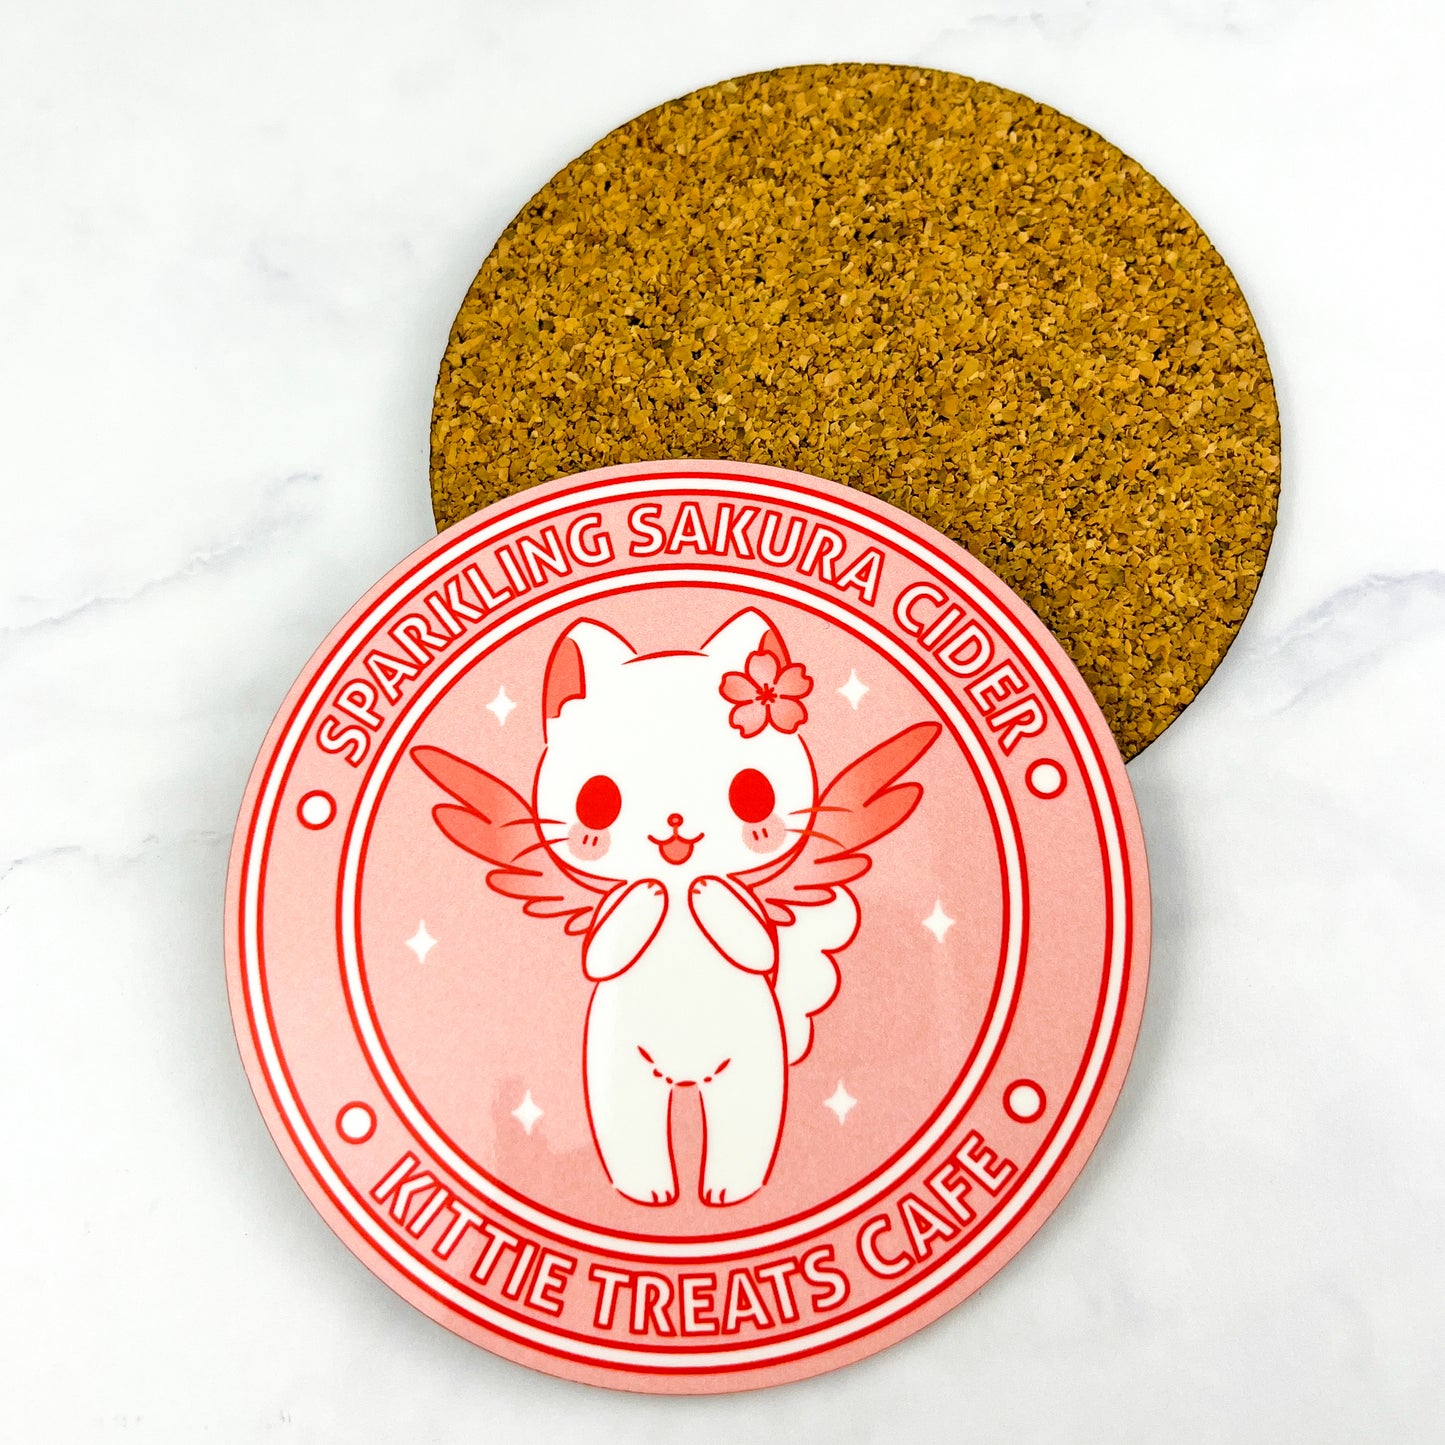 Sparkling Sakura Cider Cat Coaster Set